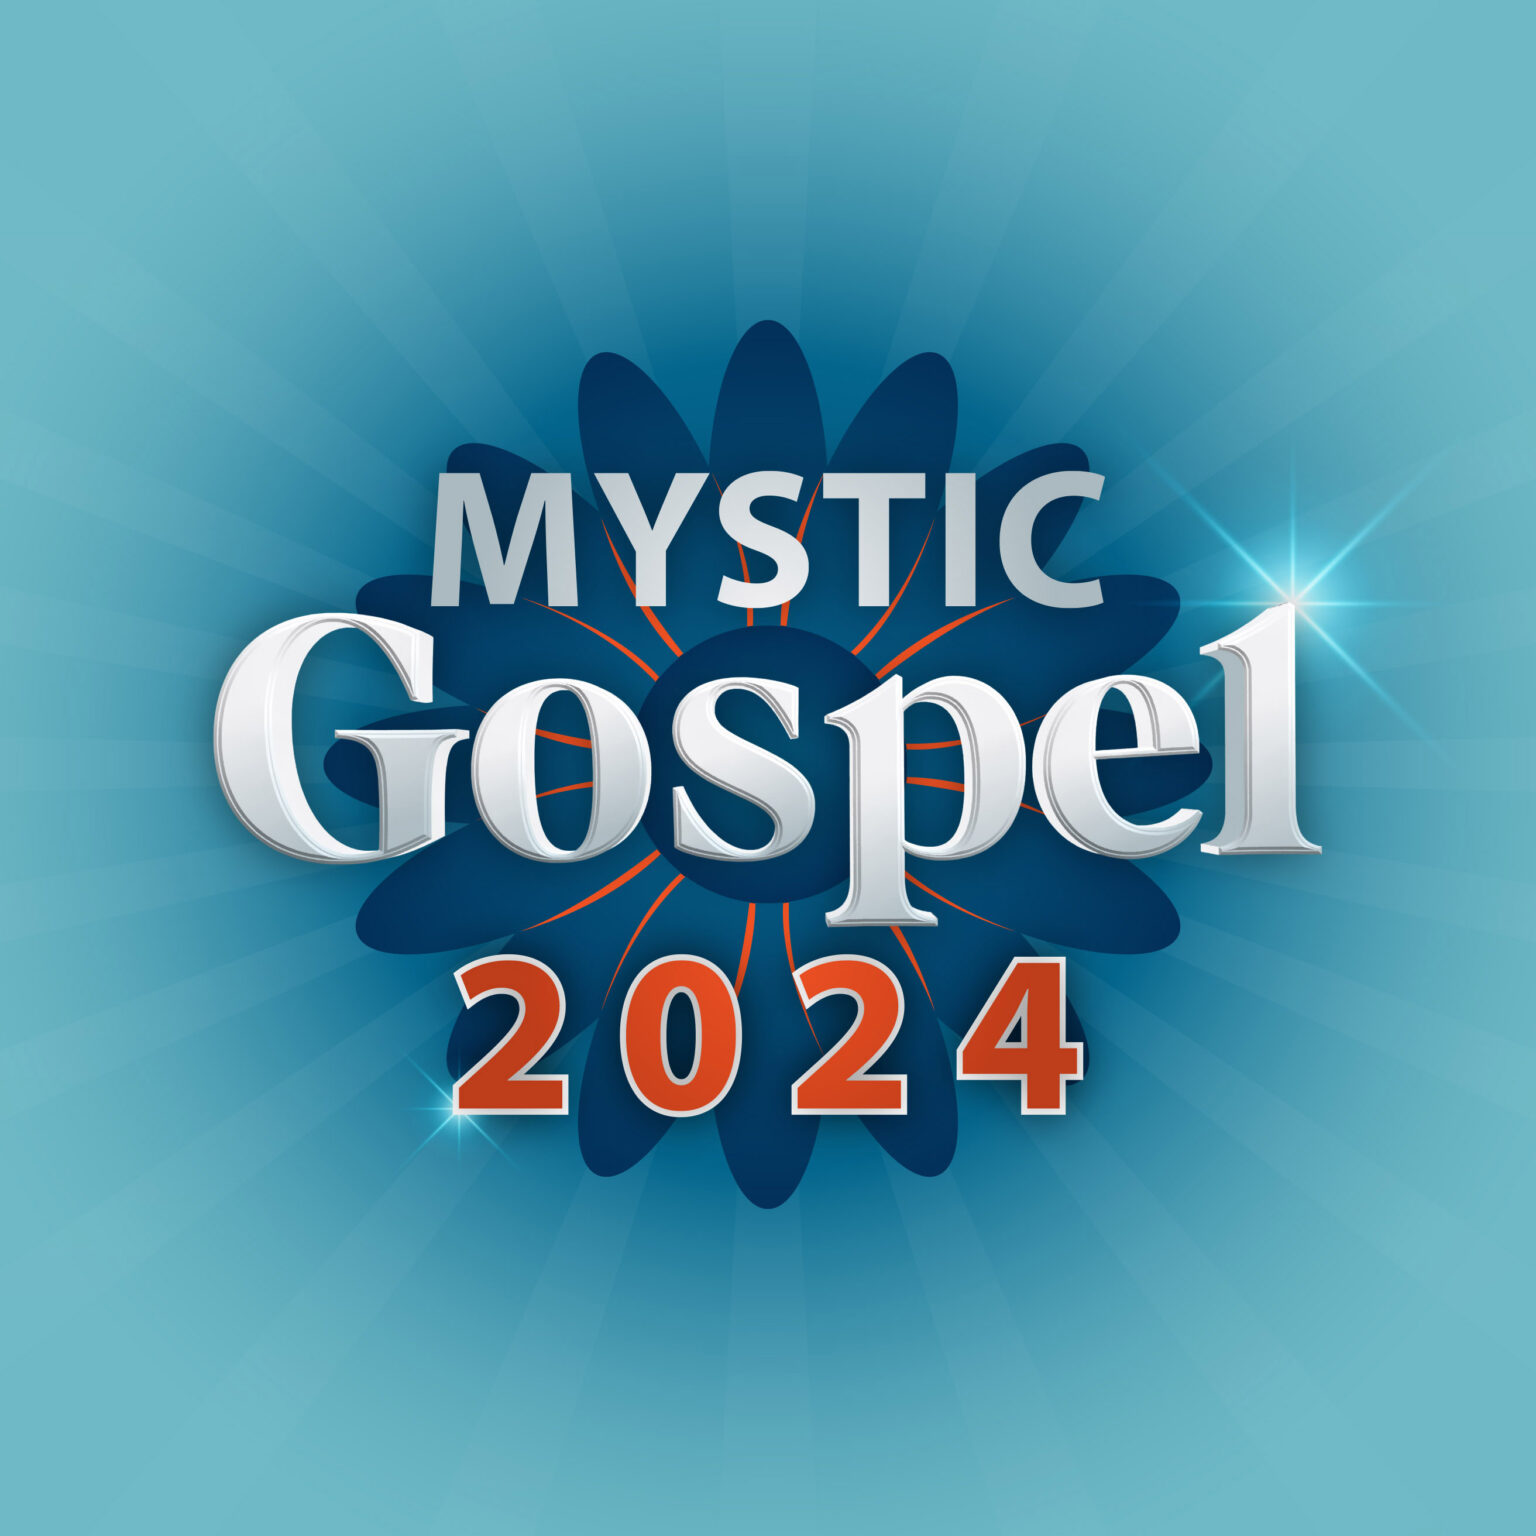 Mystic Chorale Inperson Singer Sign Up Gospel 2024